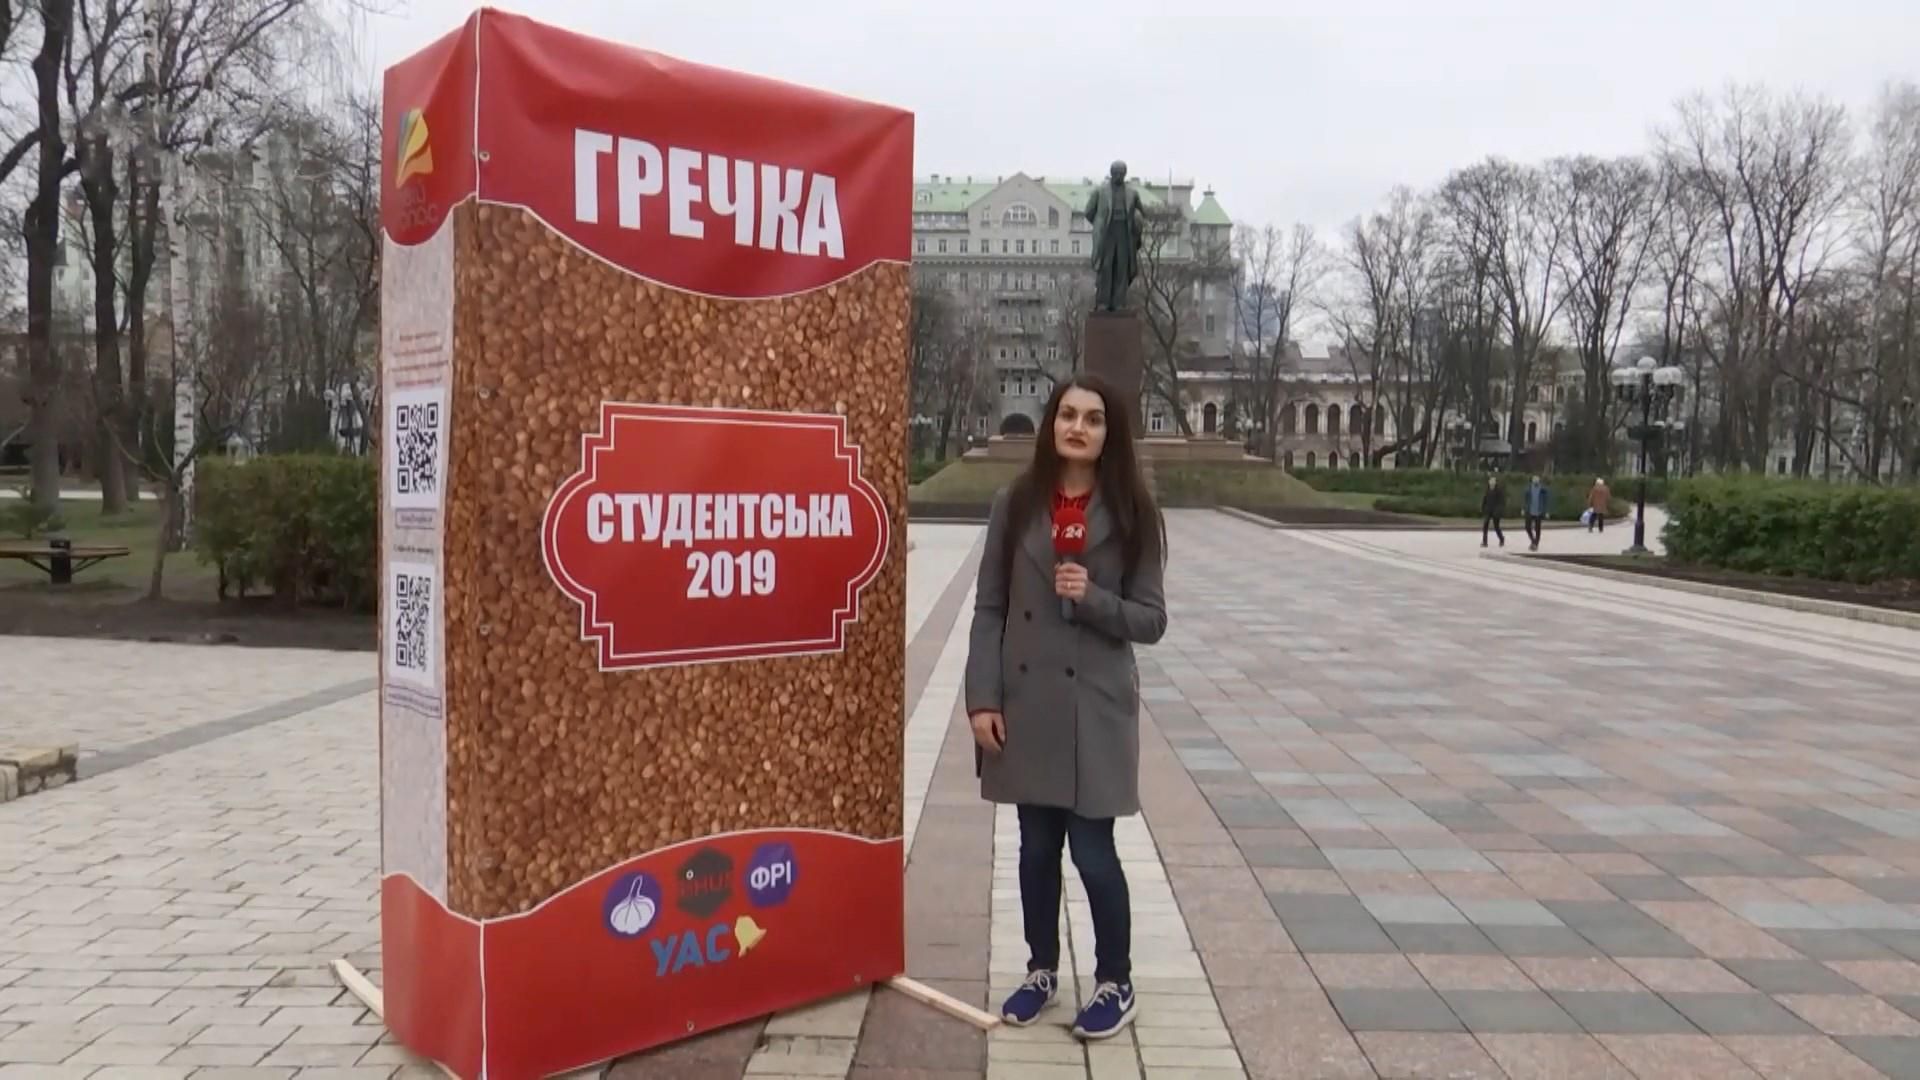 Огромные пачки гречки, как призыв не продавать голос, начали появляться по Киеву: фото, видео